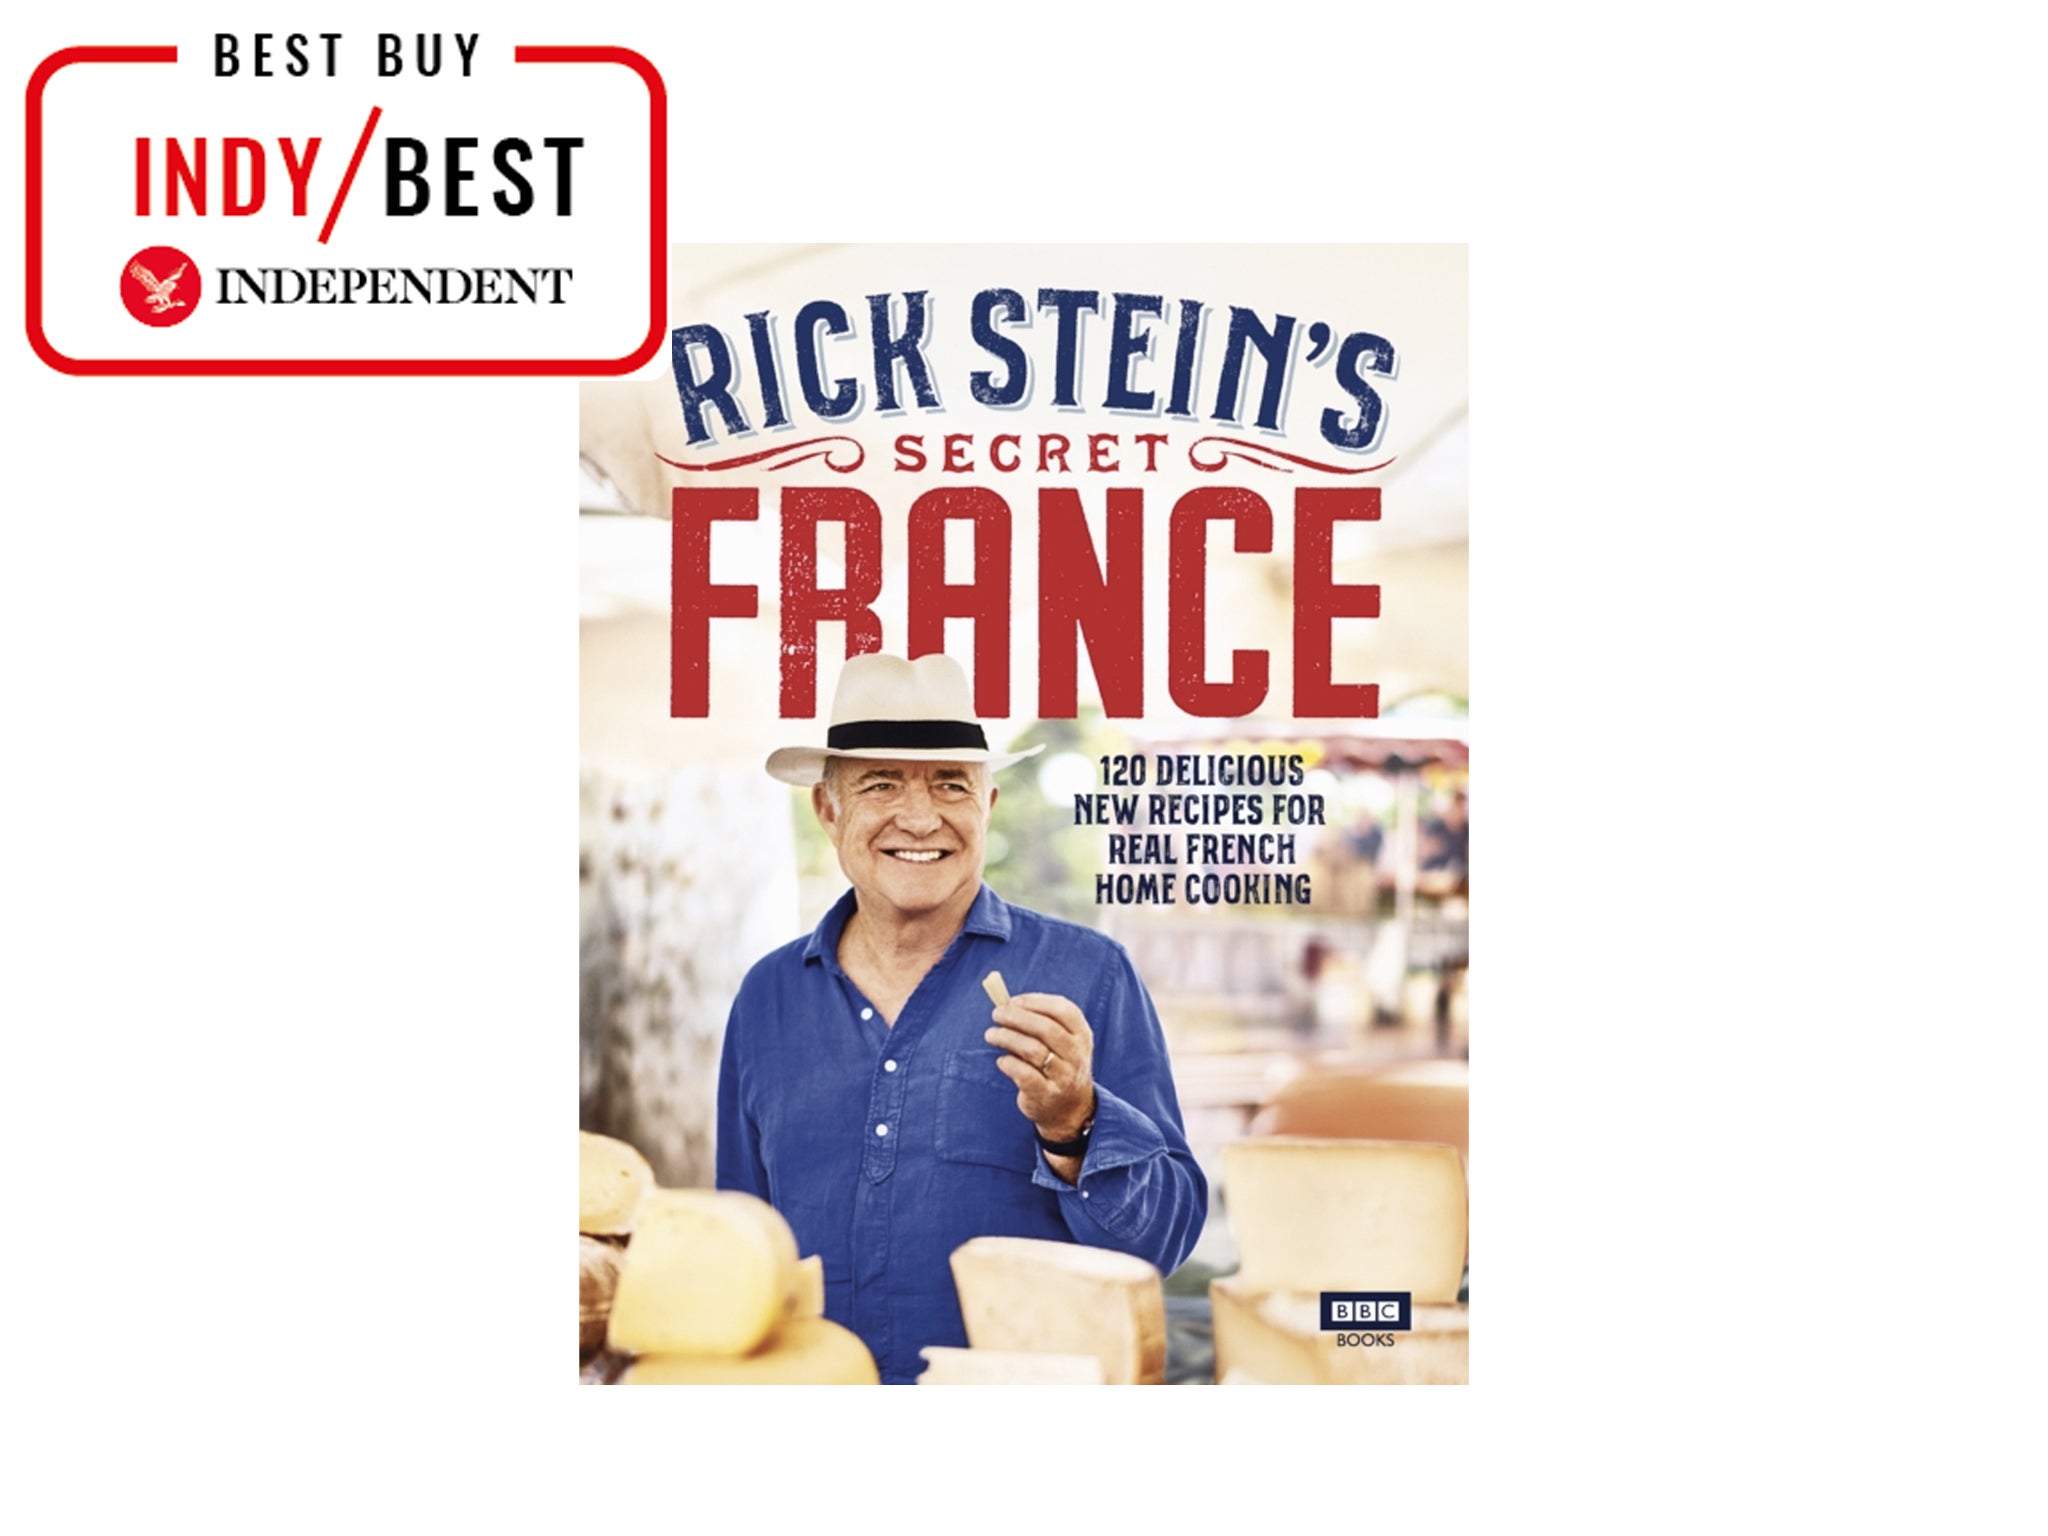 Rick Stein's Secret France by Rick Stein.jpg